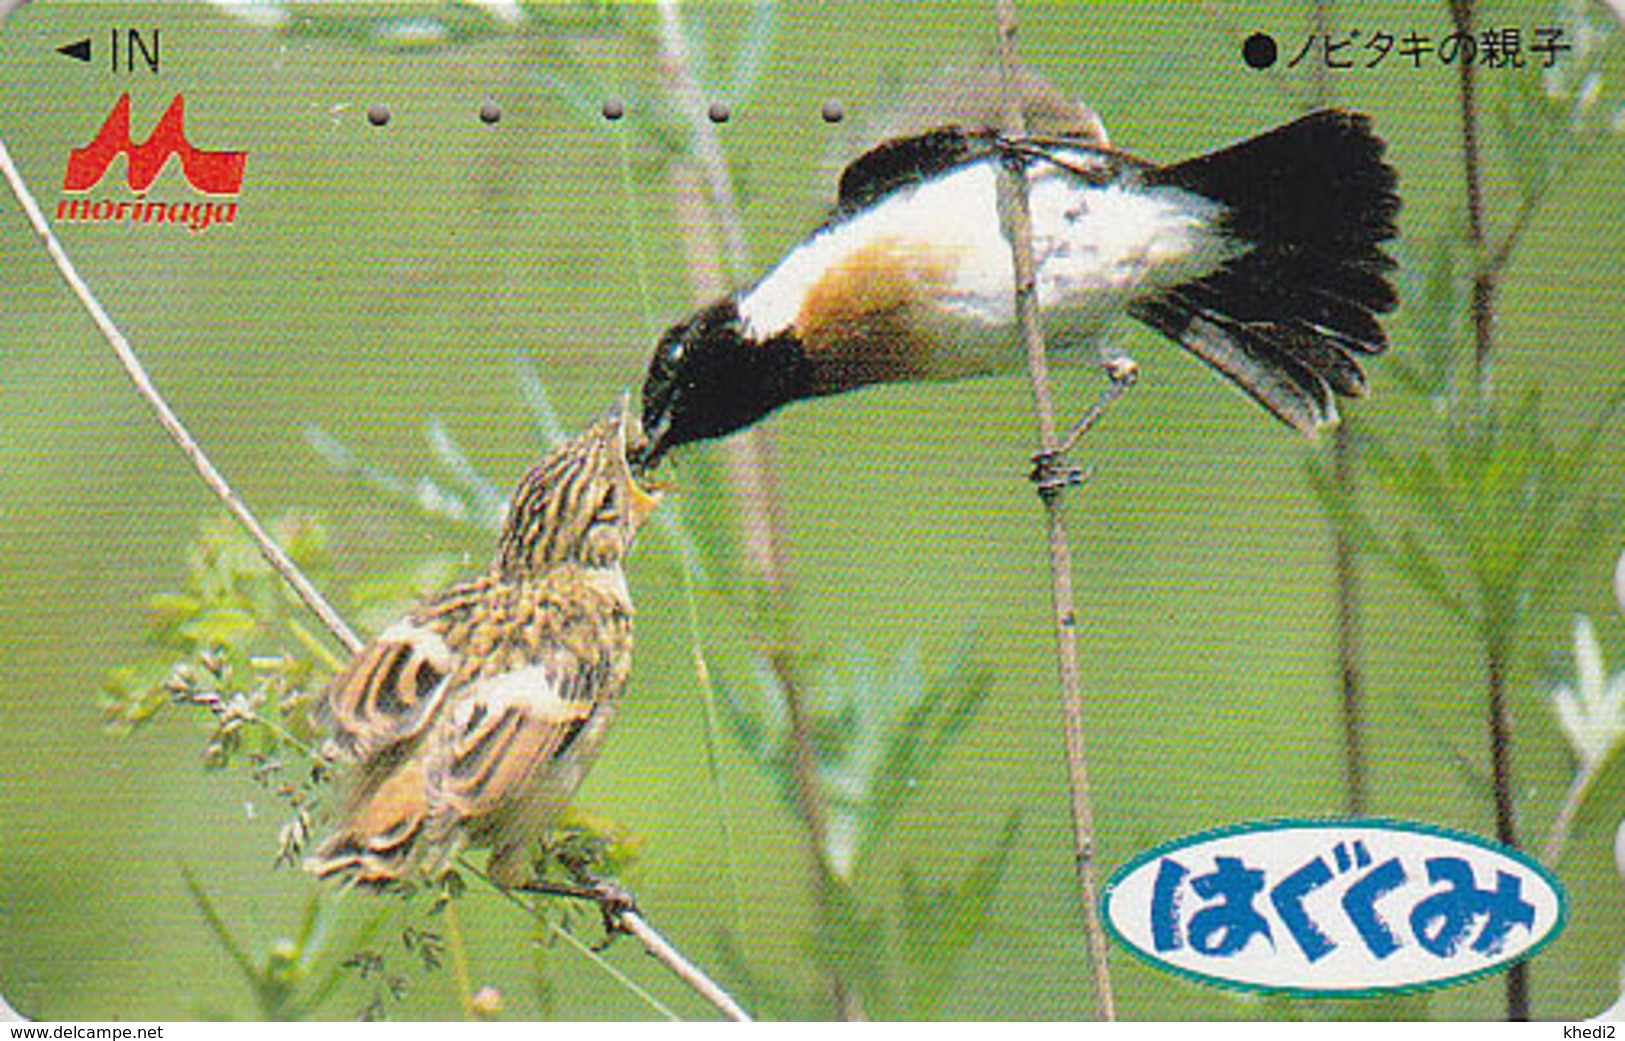 Télécarte Japon / 110-011 - Animal - OISEAU Au Nid - SONG BIRD Feeding Japan Phonecard - BE 4425 - Songbirds & Tree Dwellers